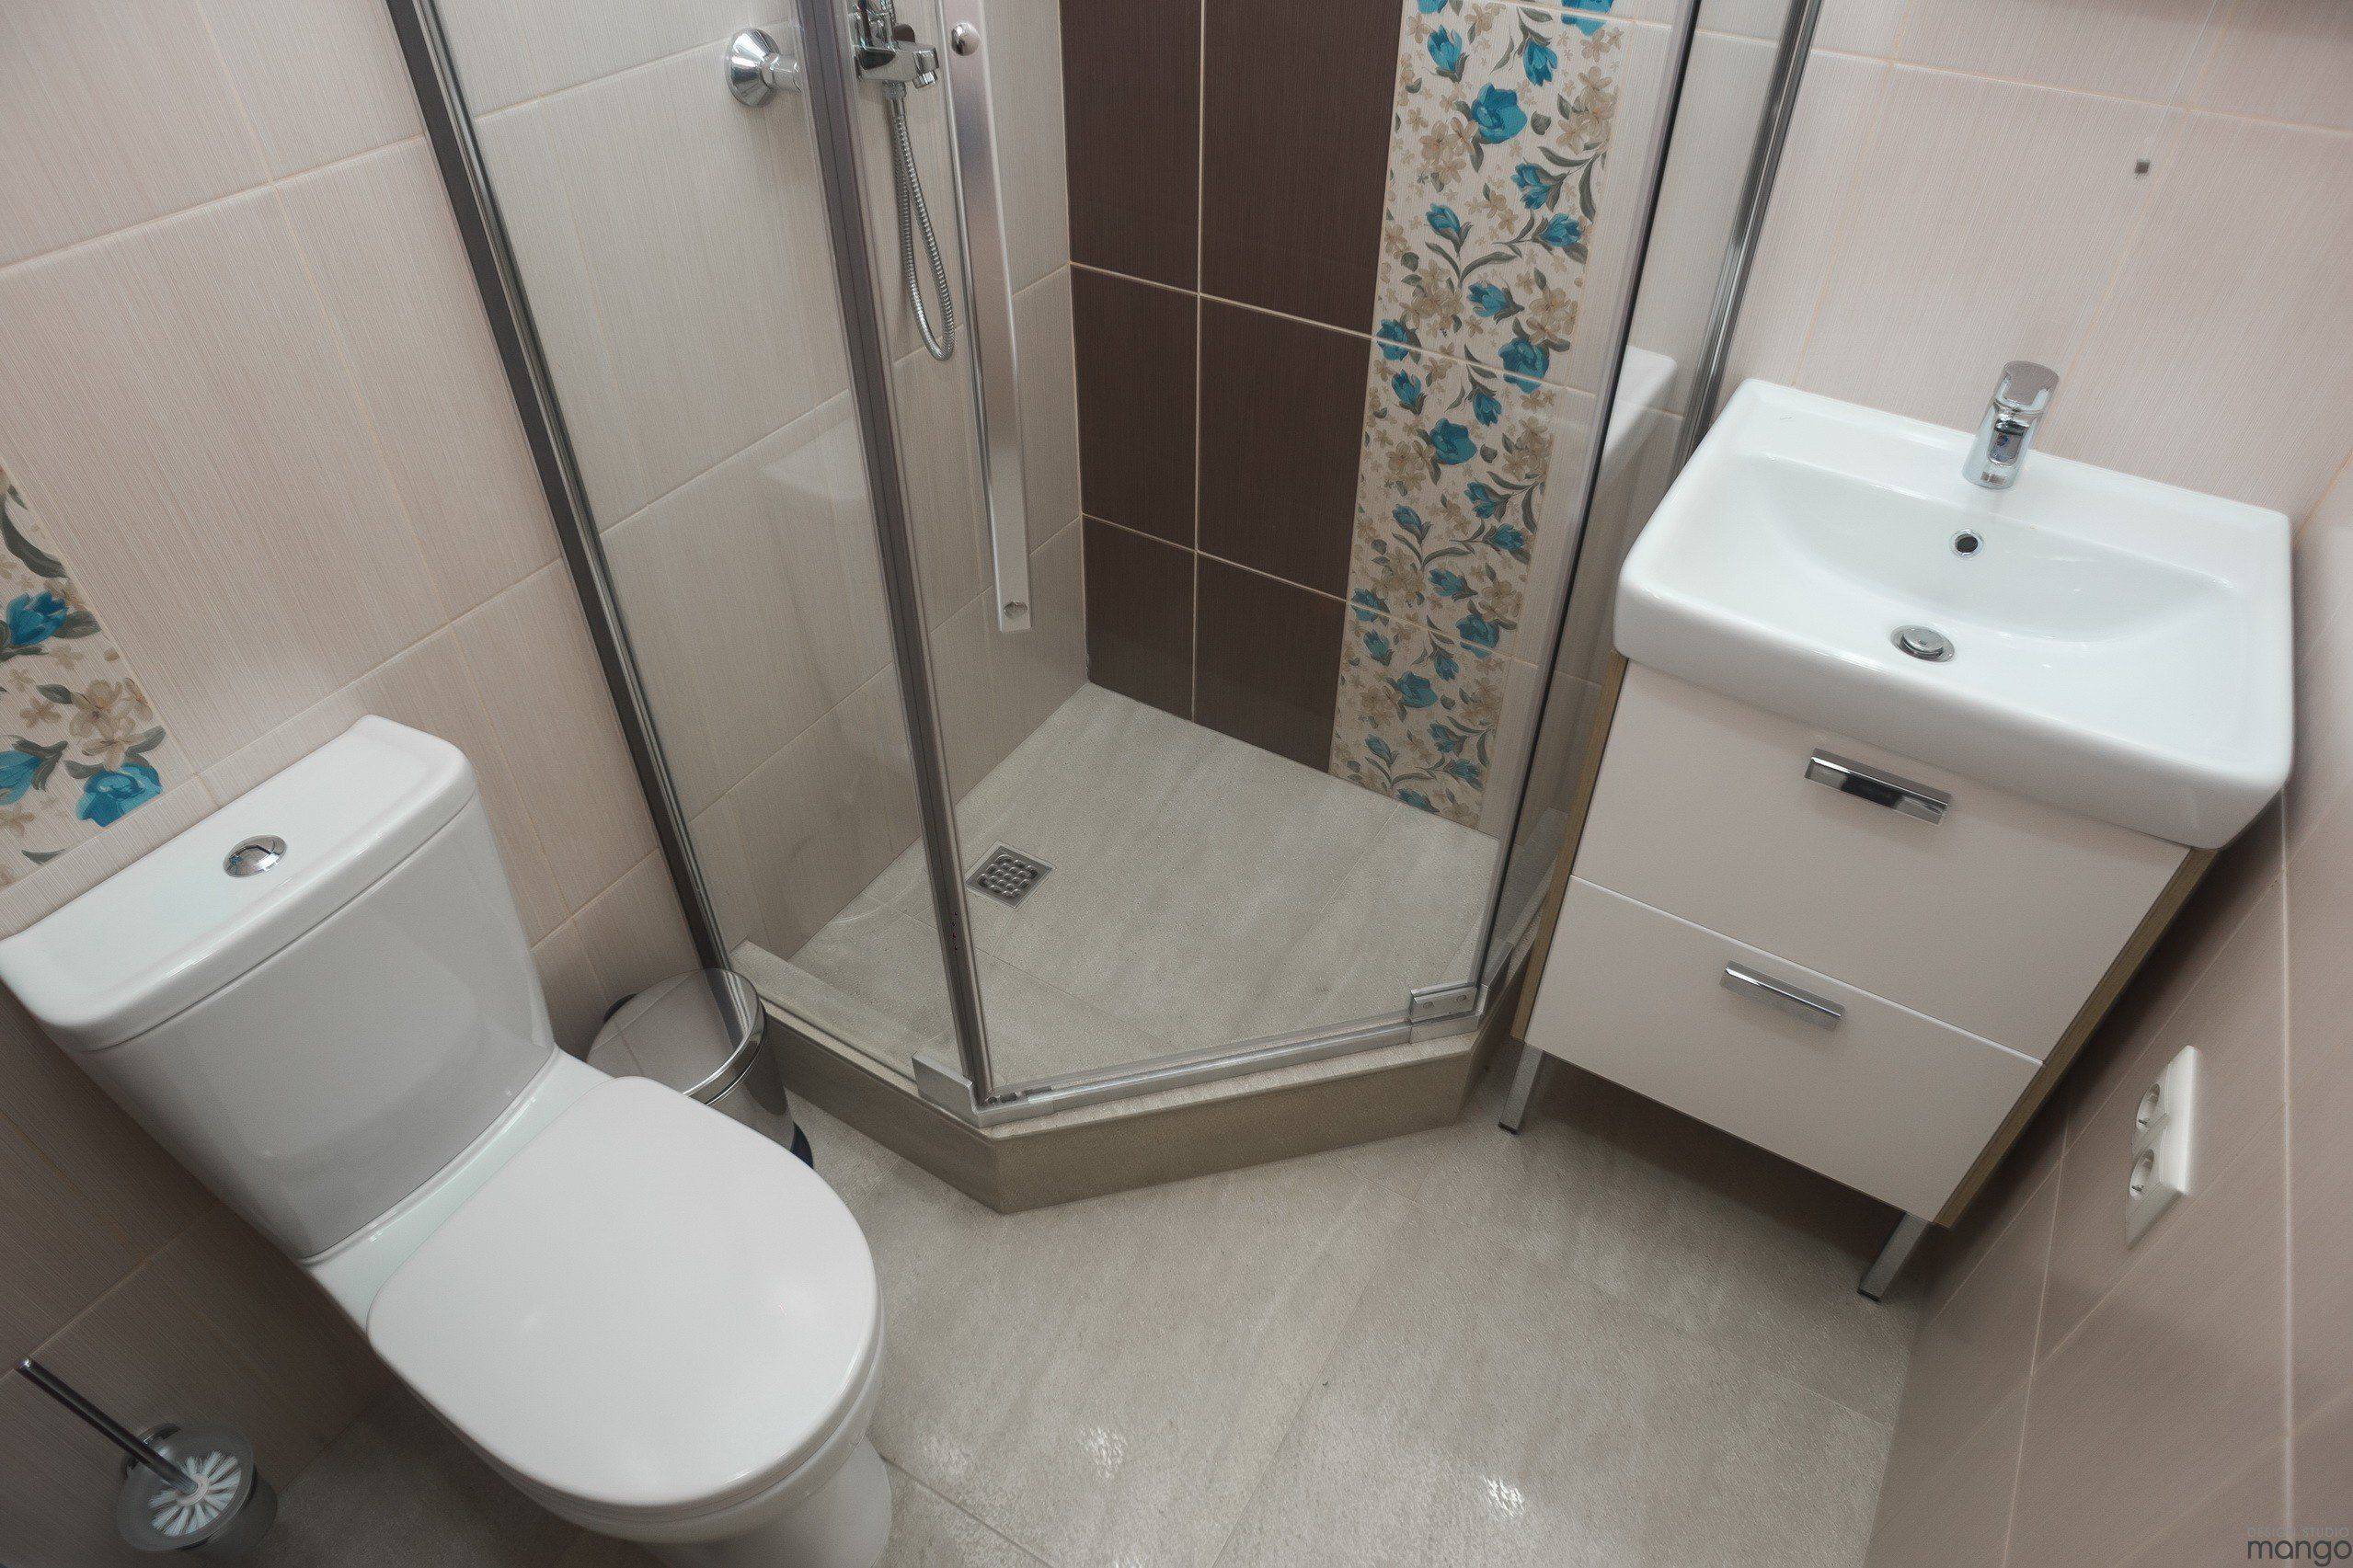 Дизайн ванных комнат совмещенных с туалетом фото планировок и интерьера ванной комнаты совмещенной с туалетом.